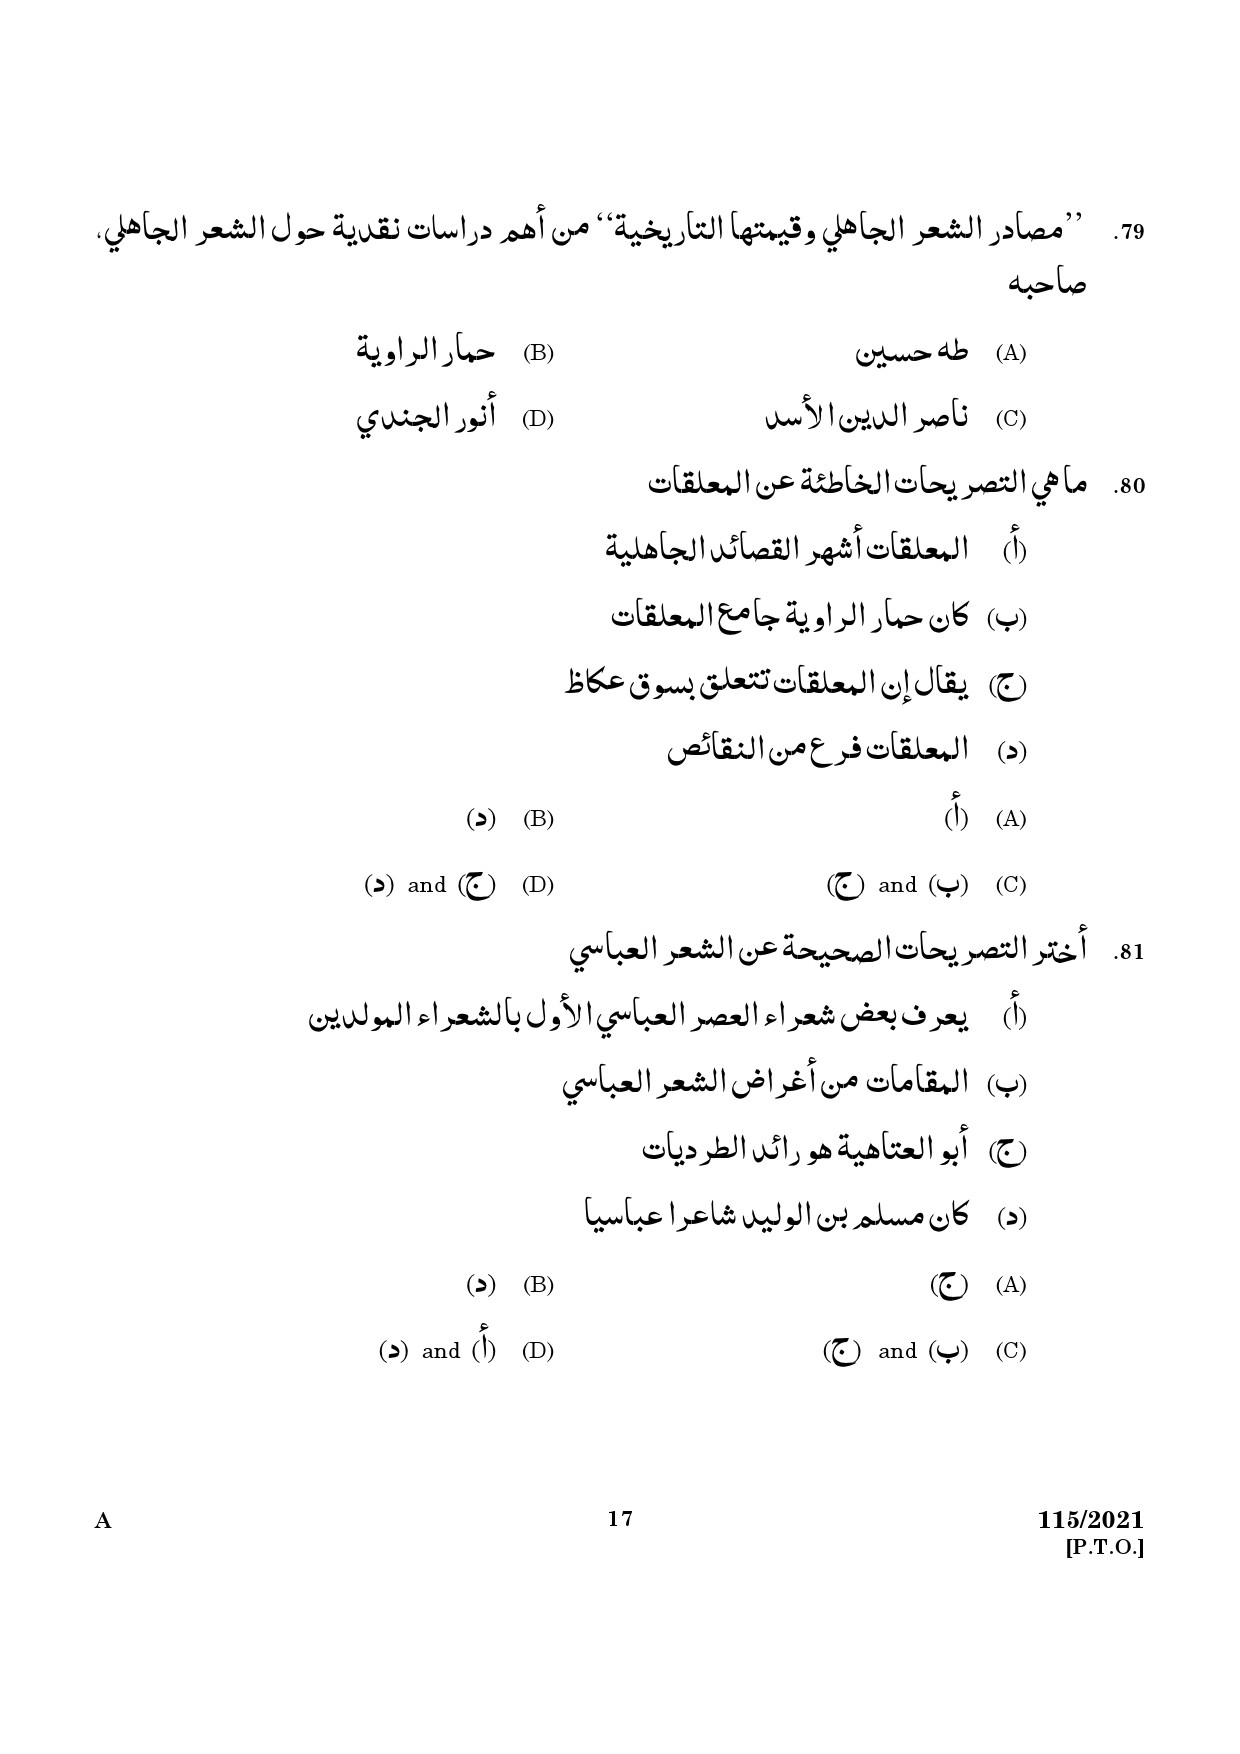 KPSC Part Time Junior Language Teacher Arabic Exam 2021 Code 1152021 15